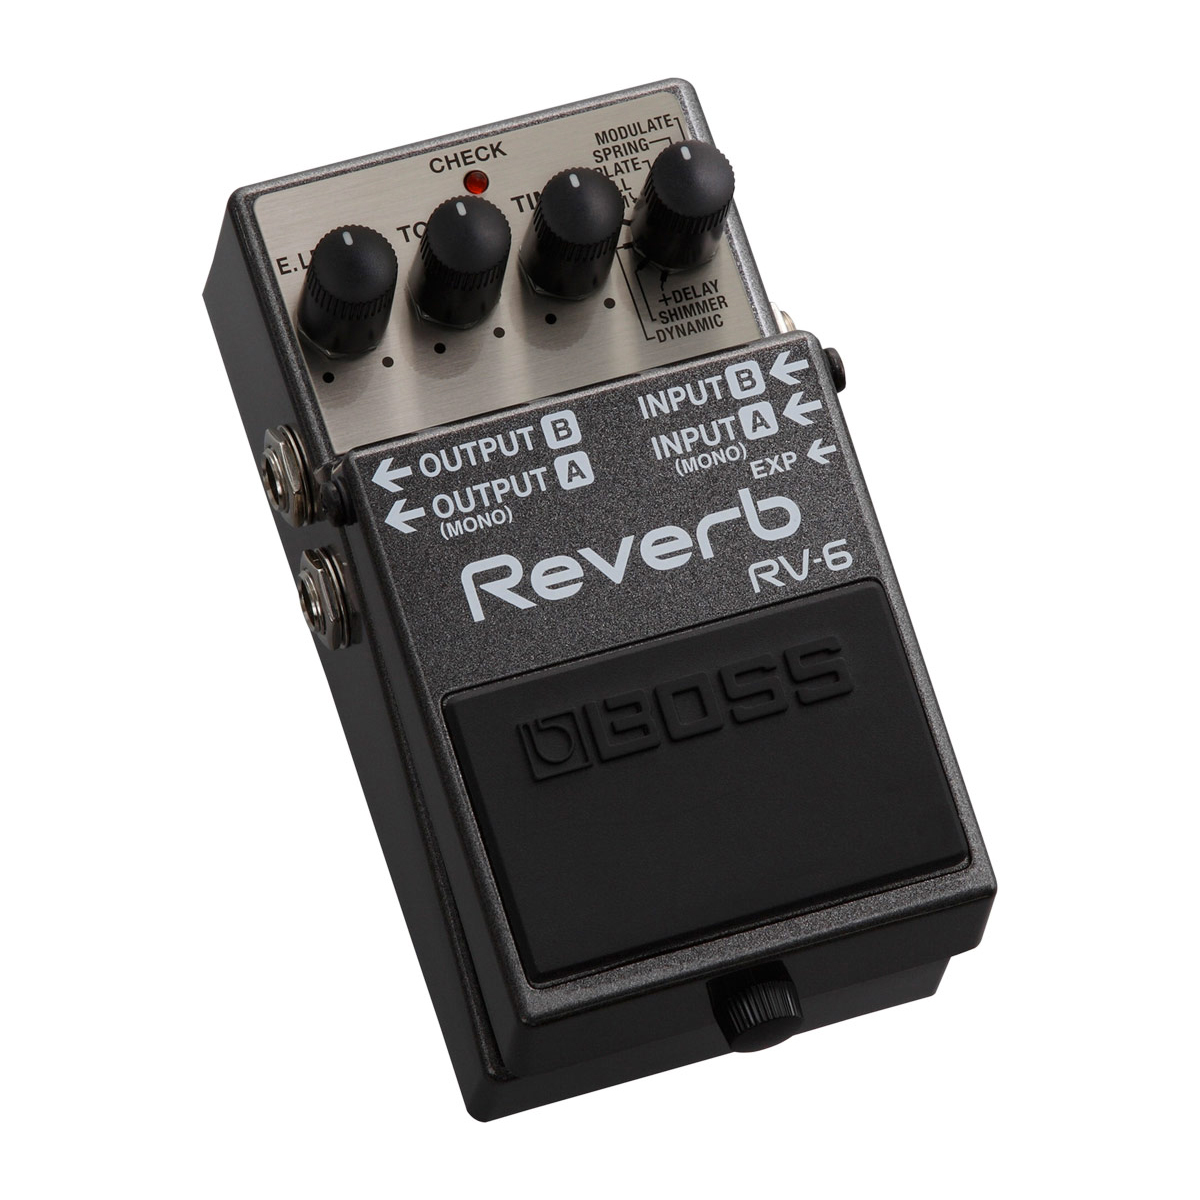 2.Reverb RV 6